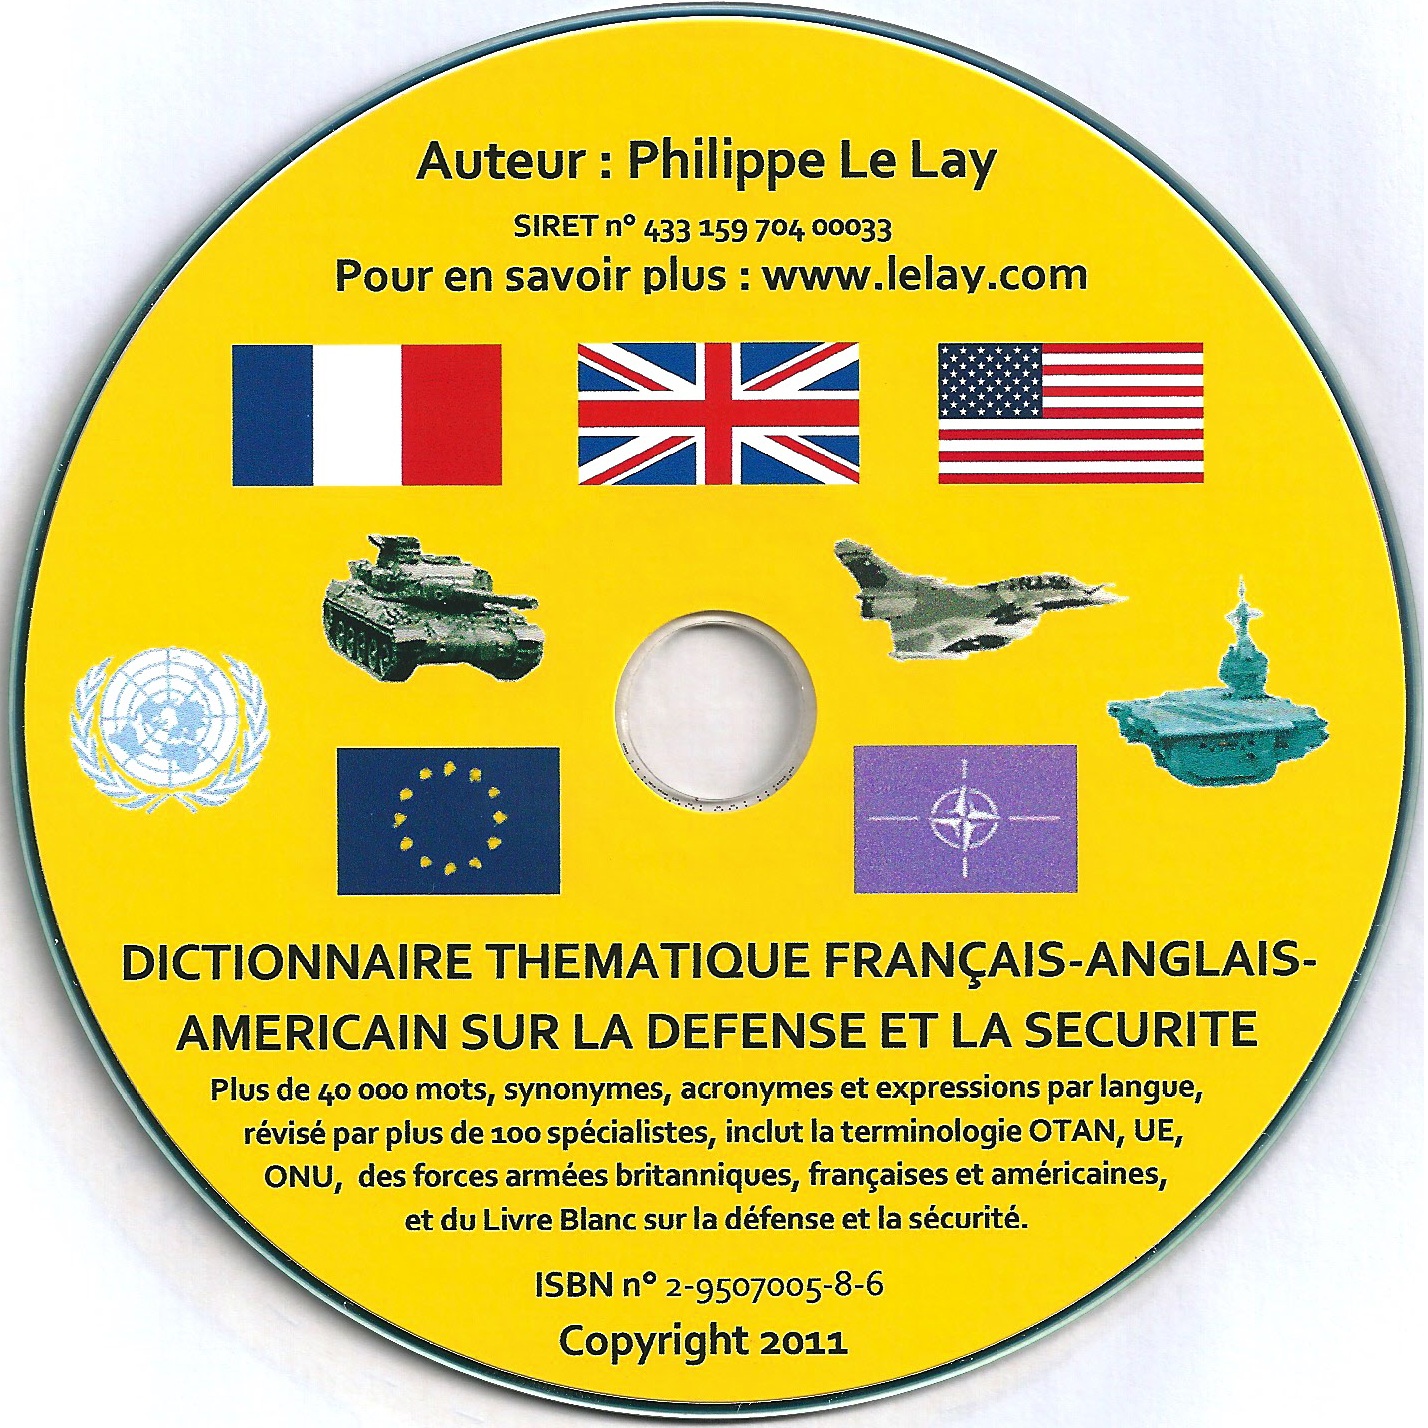 New 2011: Dictionnaire thématique français-anglais/américain sur la défense et la sécurité. French-English/American thematic dictionary on defence and security.